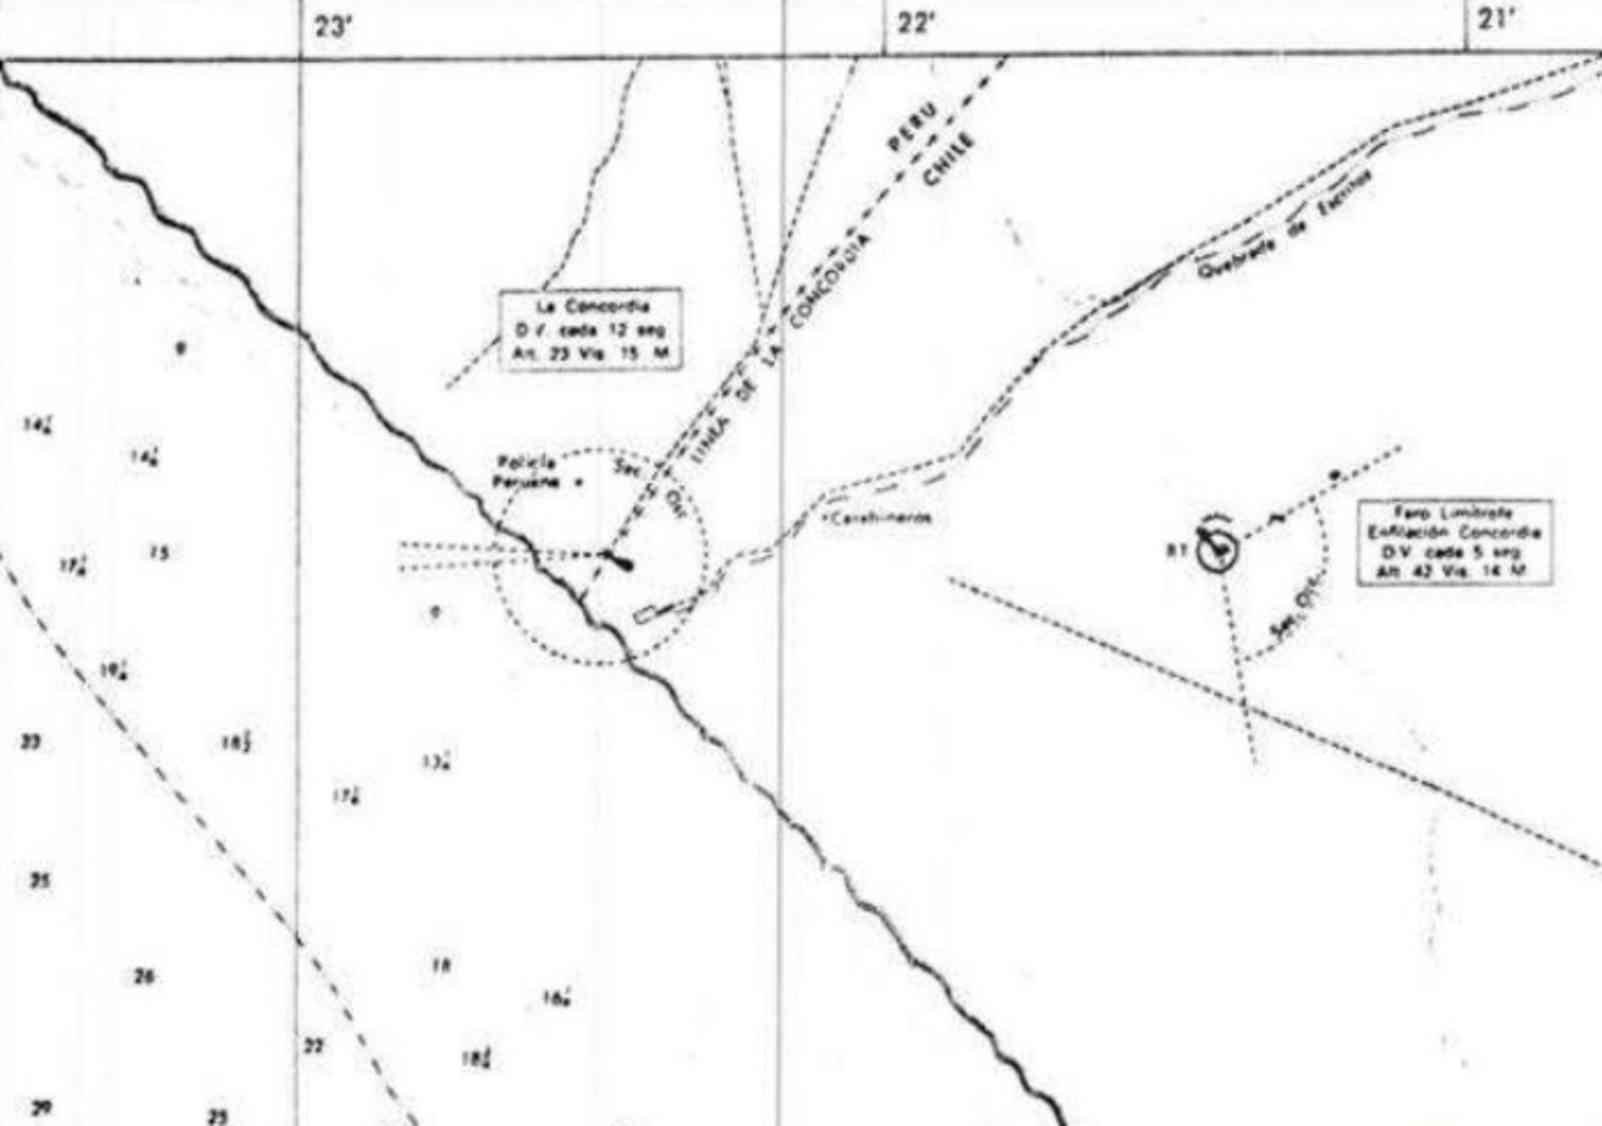 Concordia carta nautica chile1973